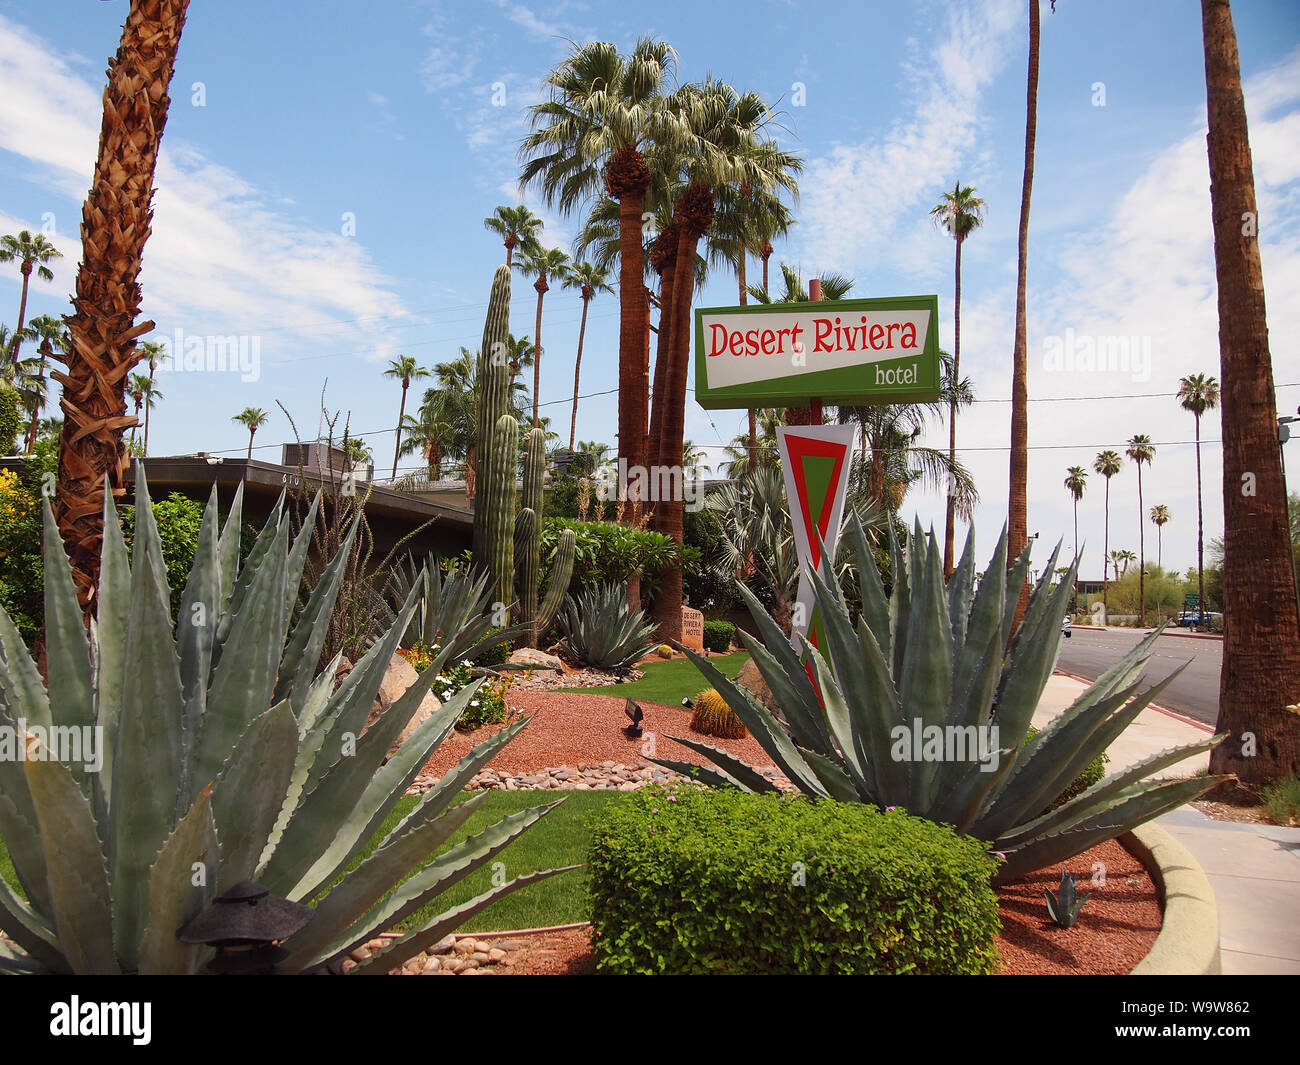 PALM Springs, Californie - Juillet 18, 2019 : Le désert Riviera Hotel, construit en 1951, dispose de superbes jardins de cactus entourant un hébergement intime Banque D'Images